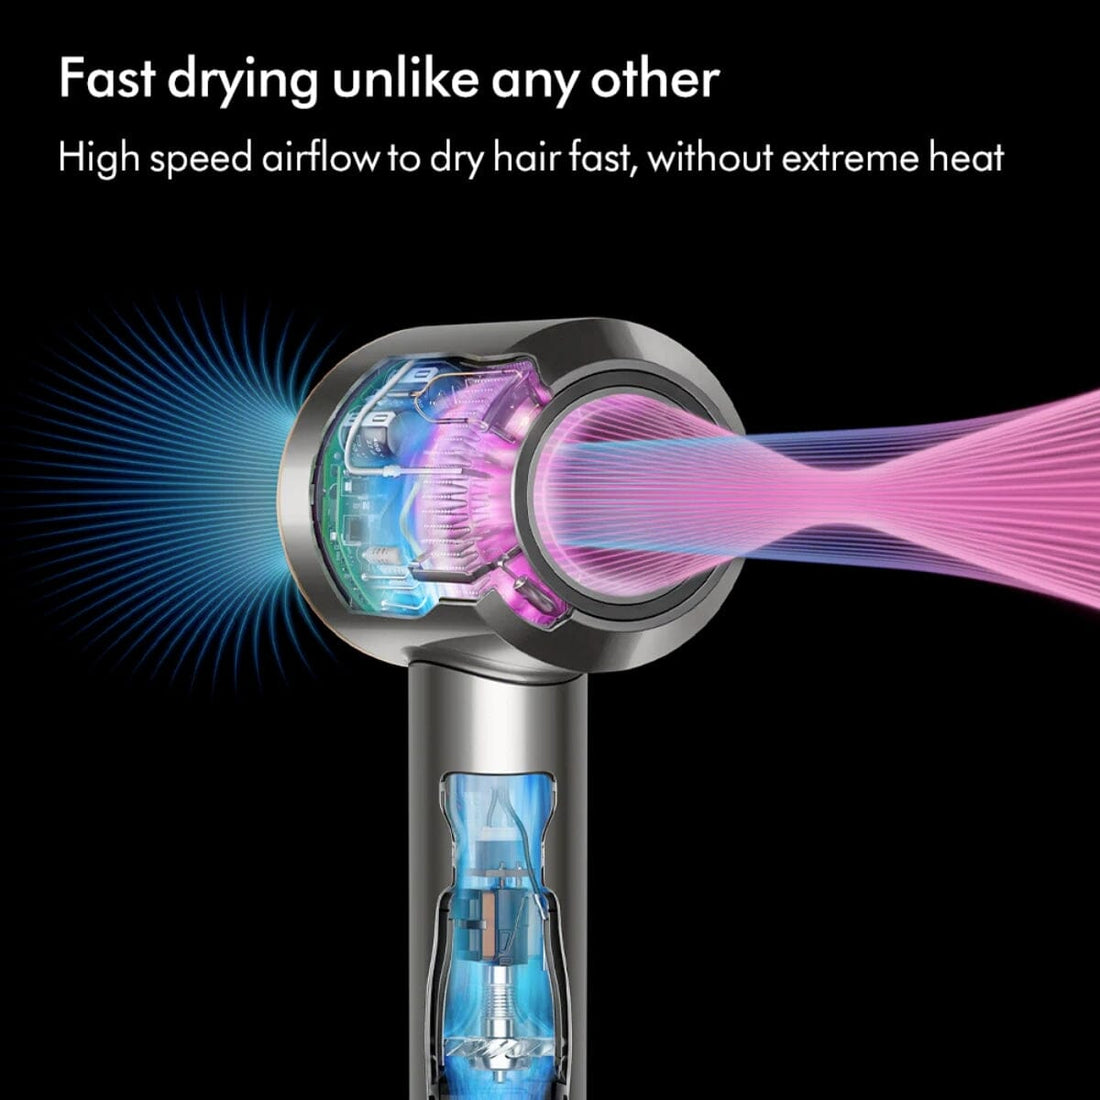 Dyson Supersonic Hair Dryer HD08 with Presentation Case - Vinca Blue/Rosé - HairMNL